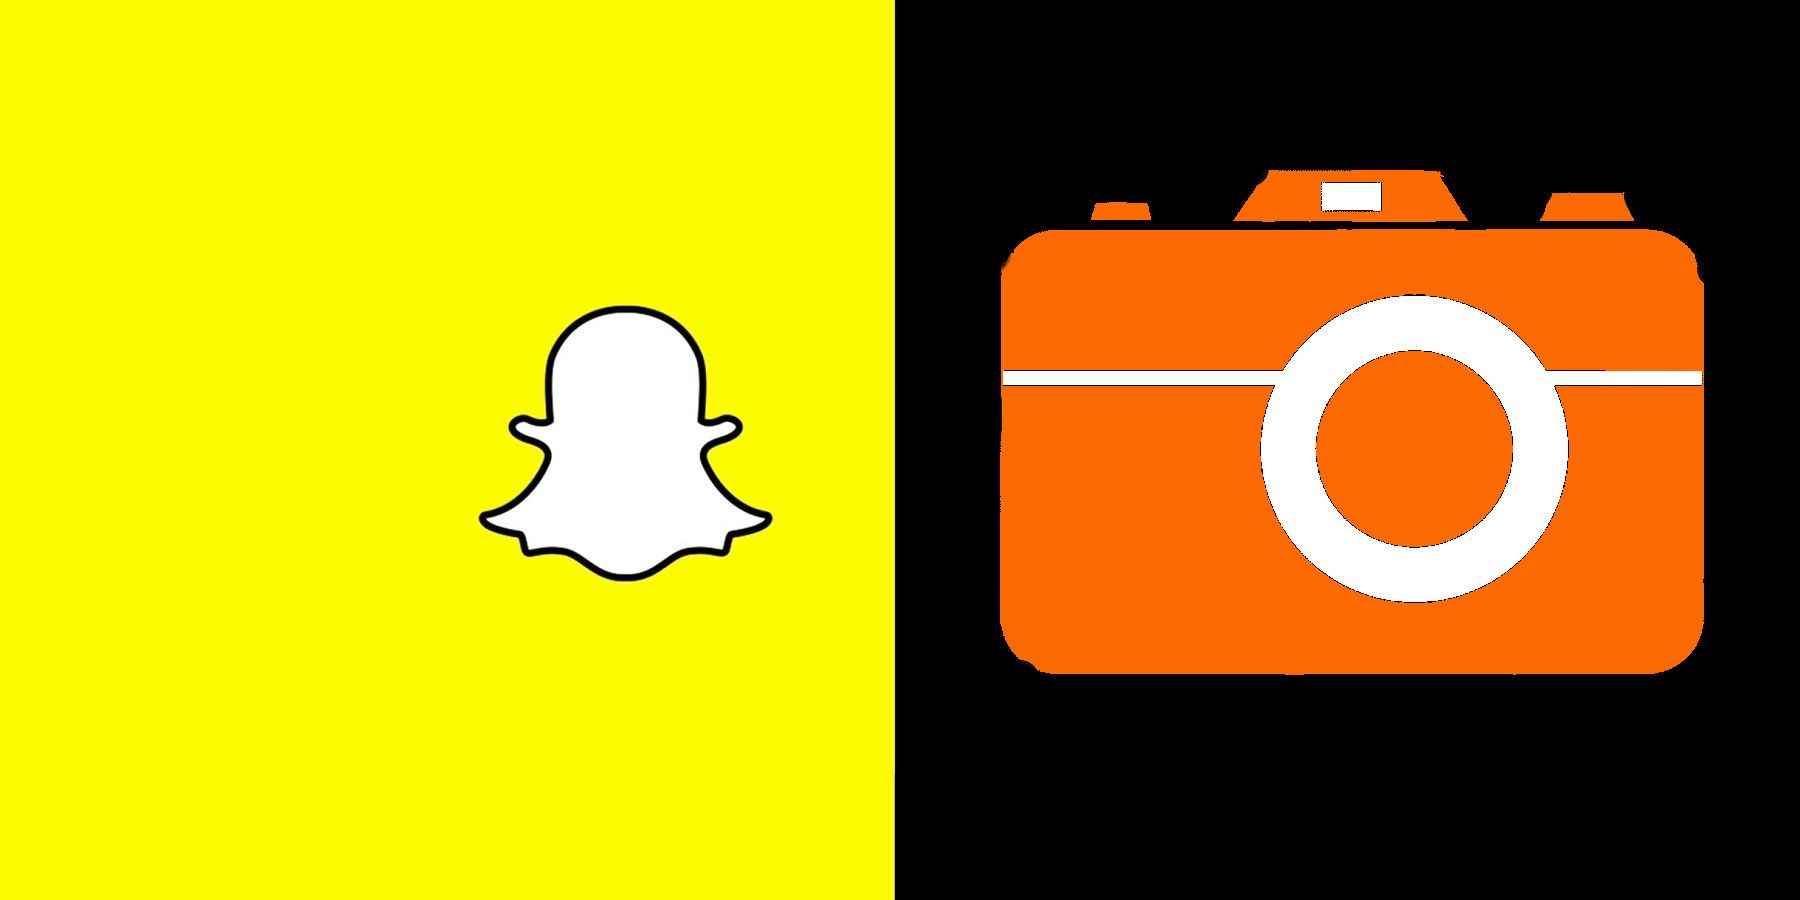 Snapchat and Camera duel